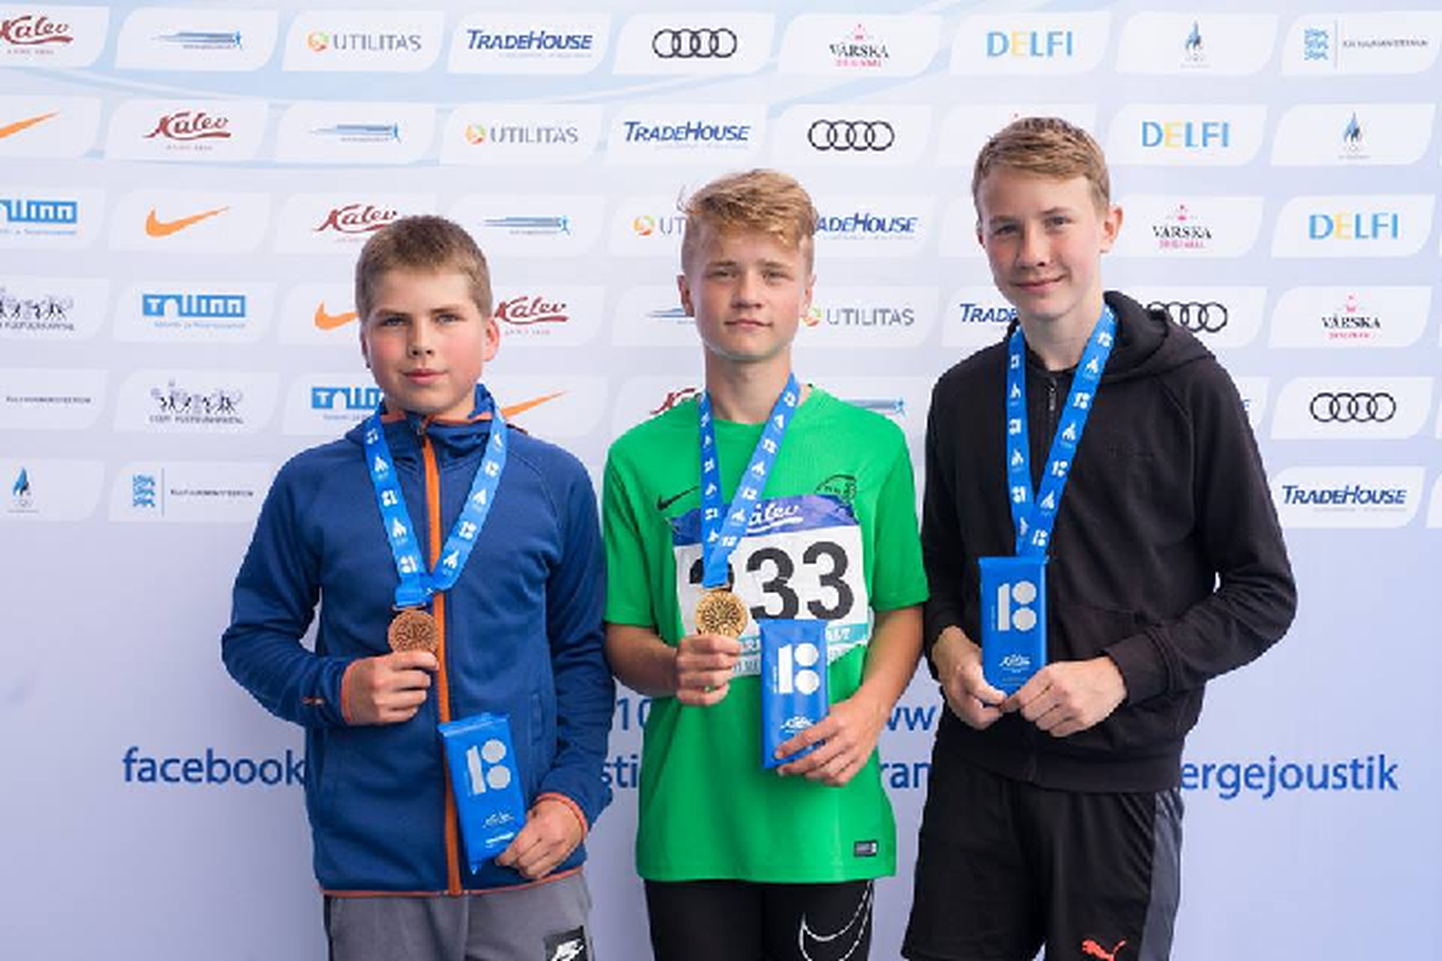 U14 vanuseklassis võitis Tõrva klubi Viraaž esindaja Romet Kivi (keskel) kaks kulda, ühe hõbeda ja ühe pronksi. Üks kuldadest tuli odaviskes.